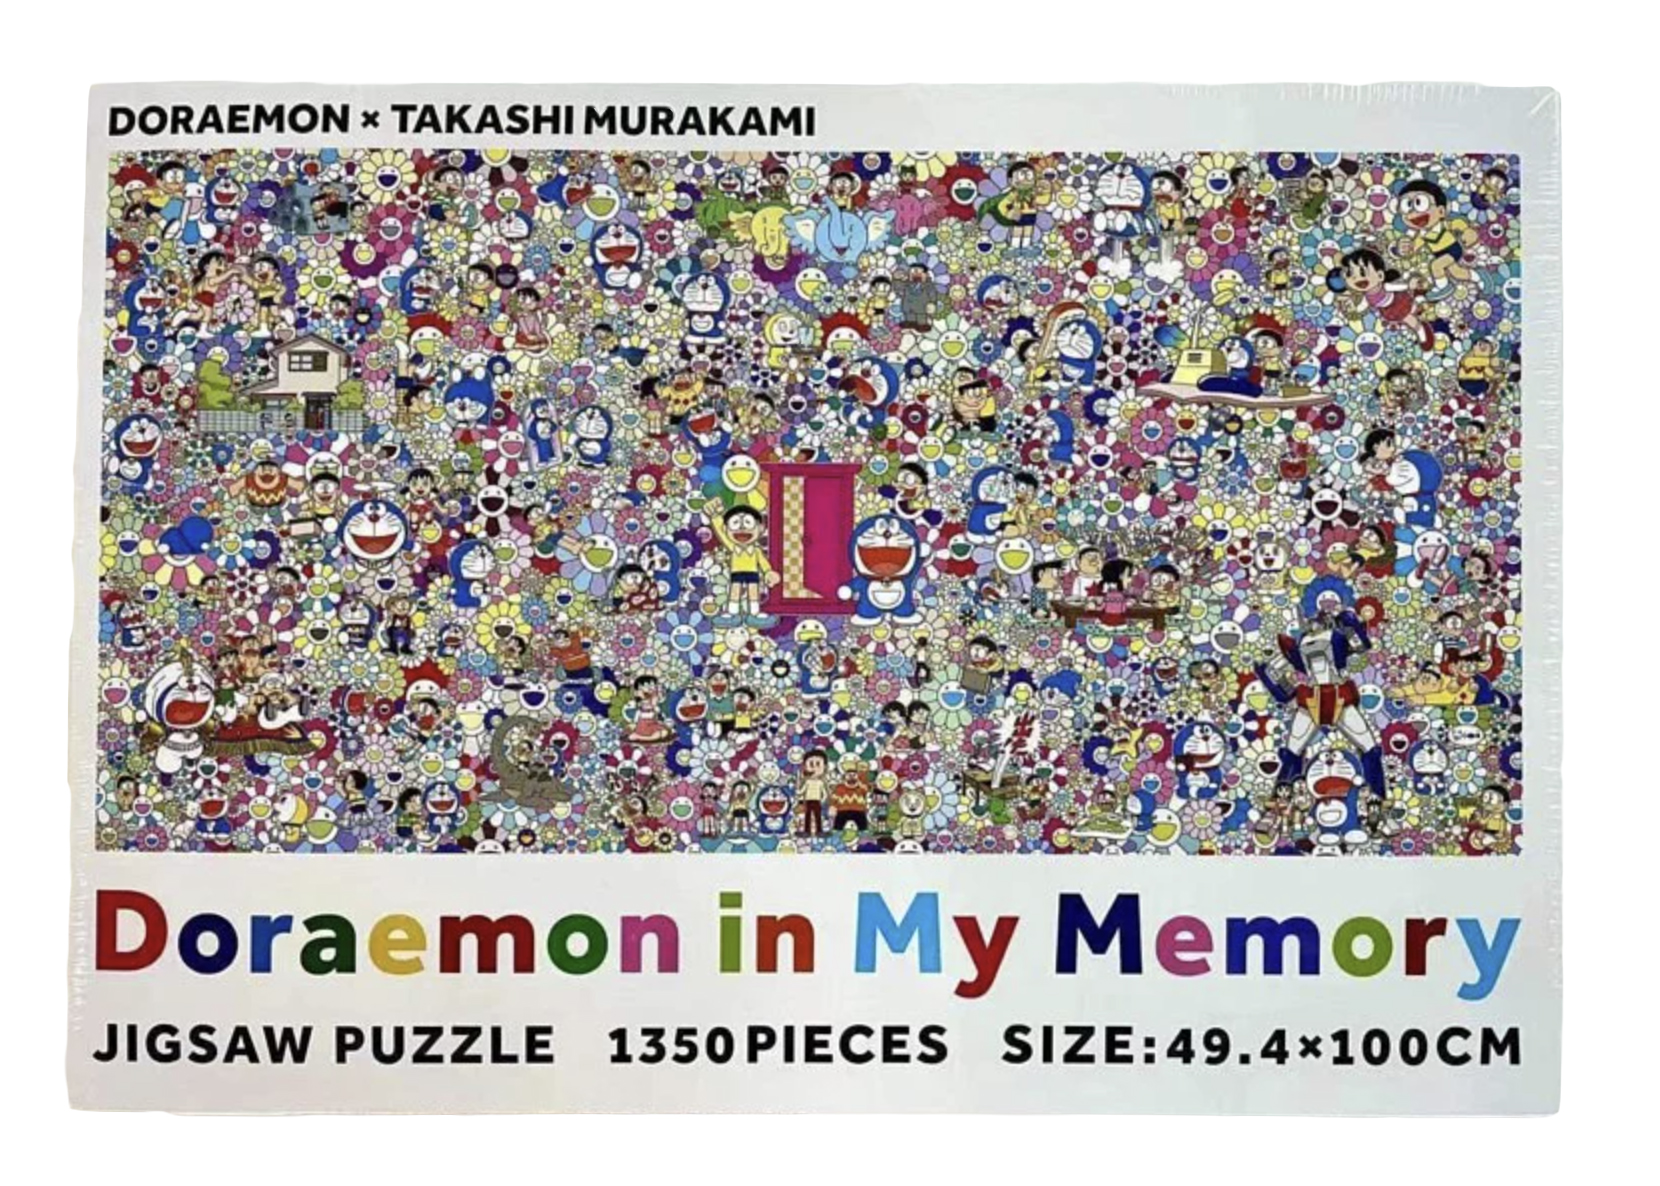 Takashi Murakami x Doraemon in My Memory Jigsaw Puzzle